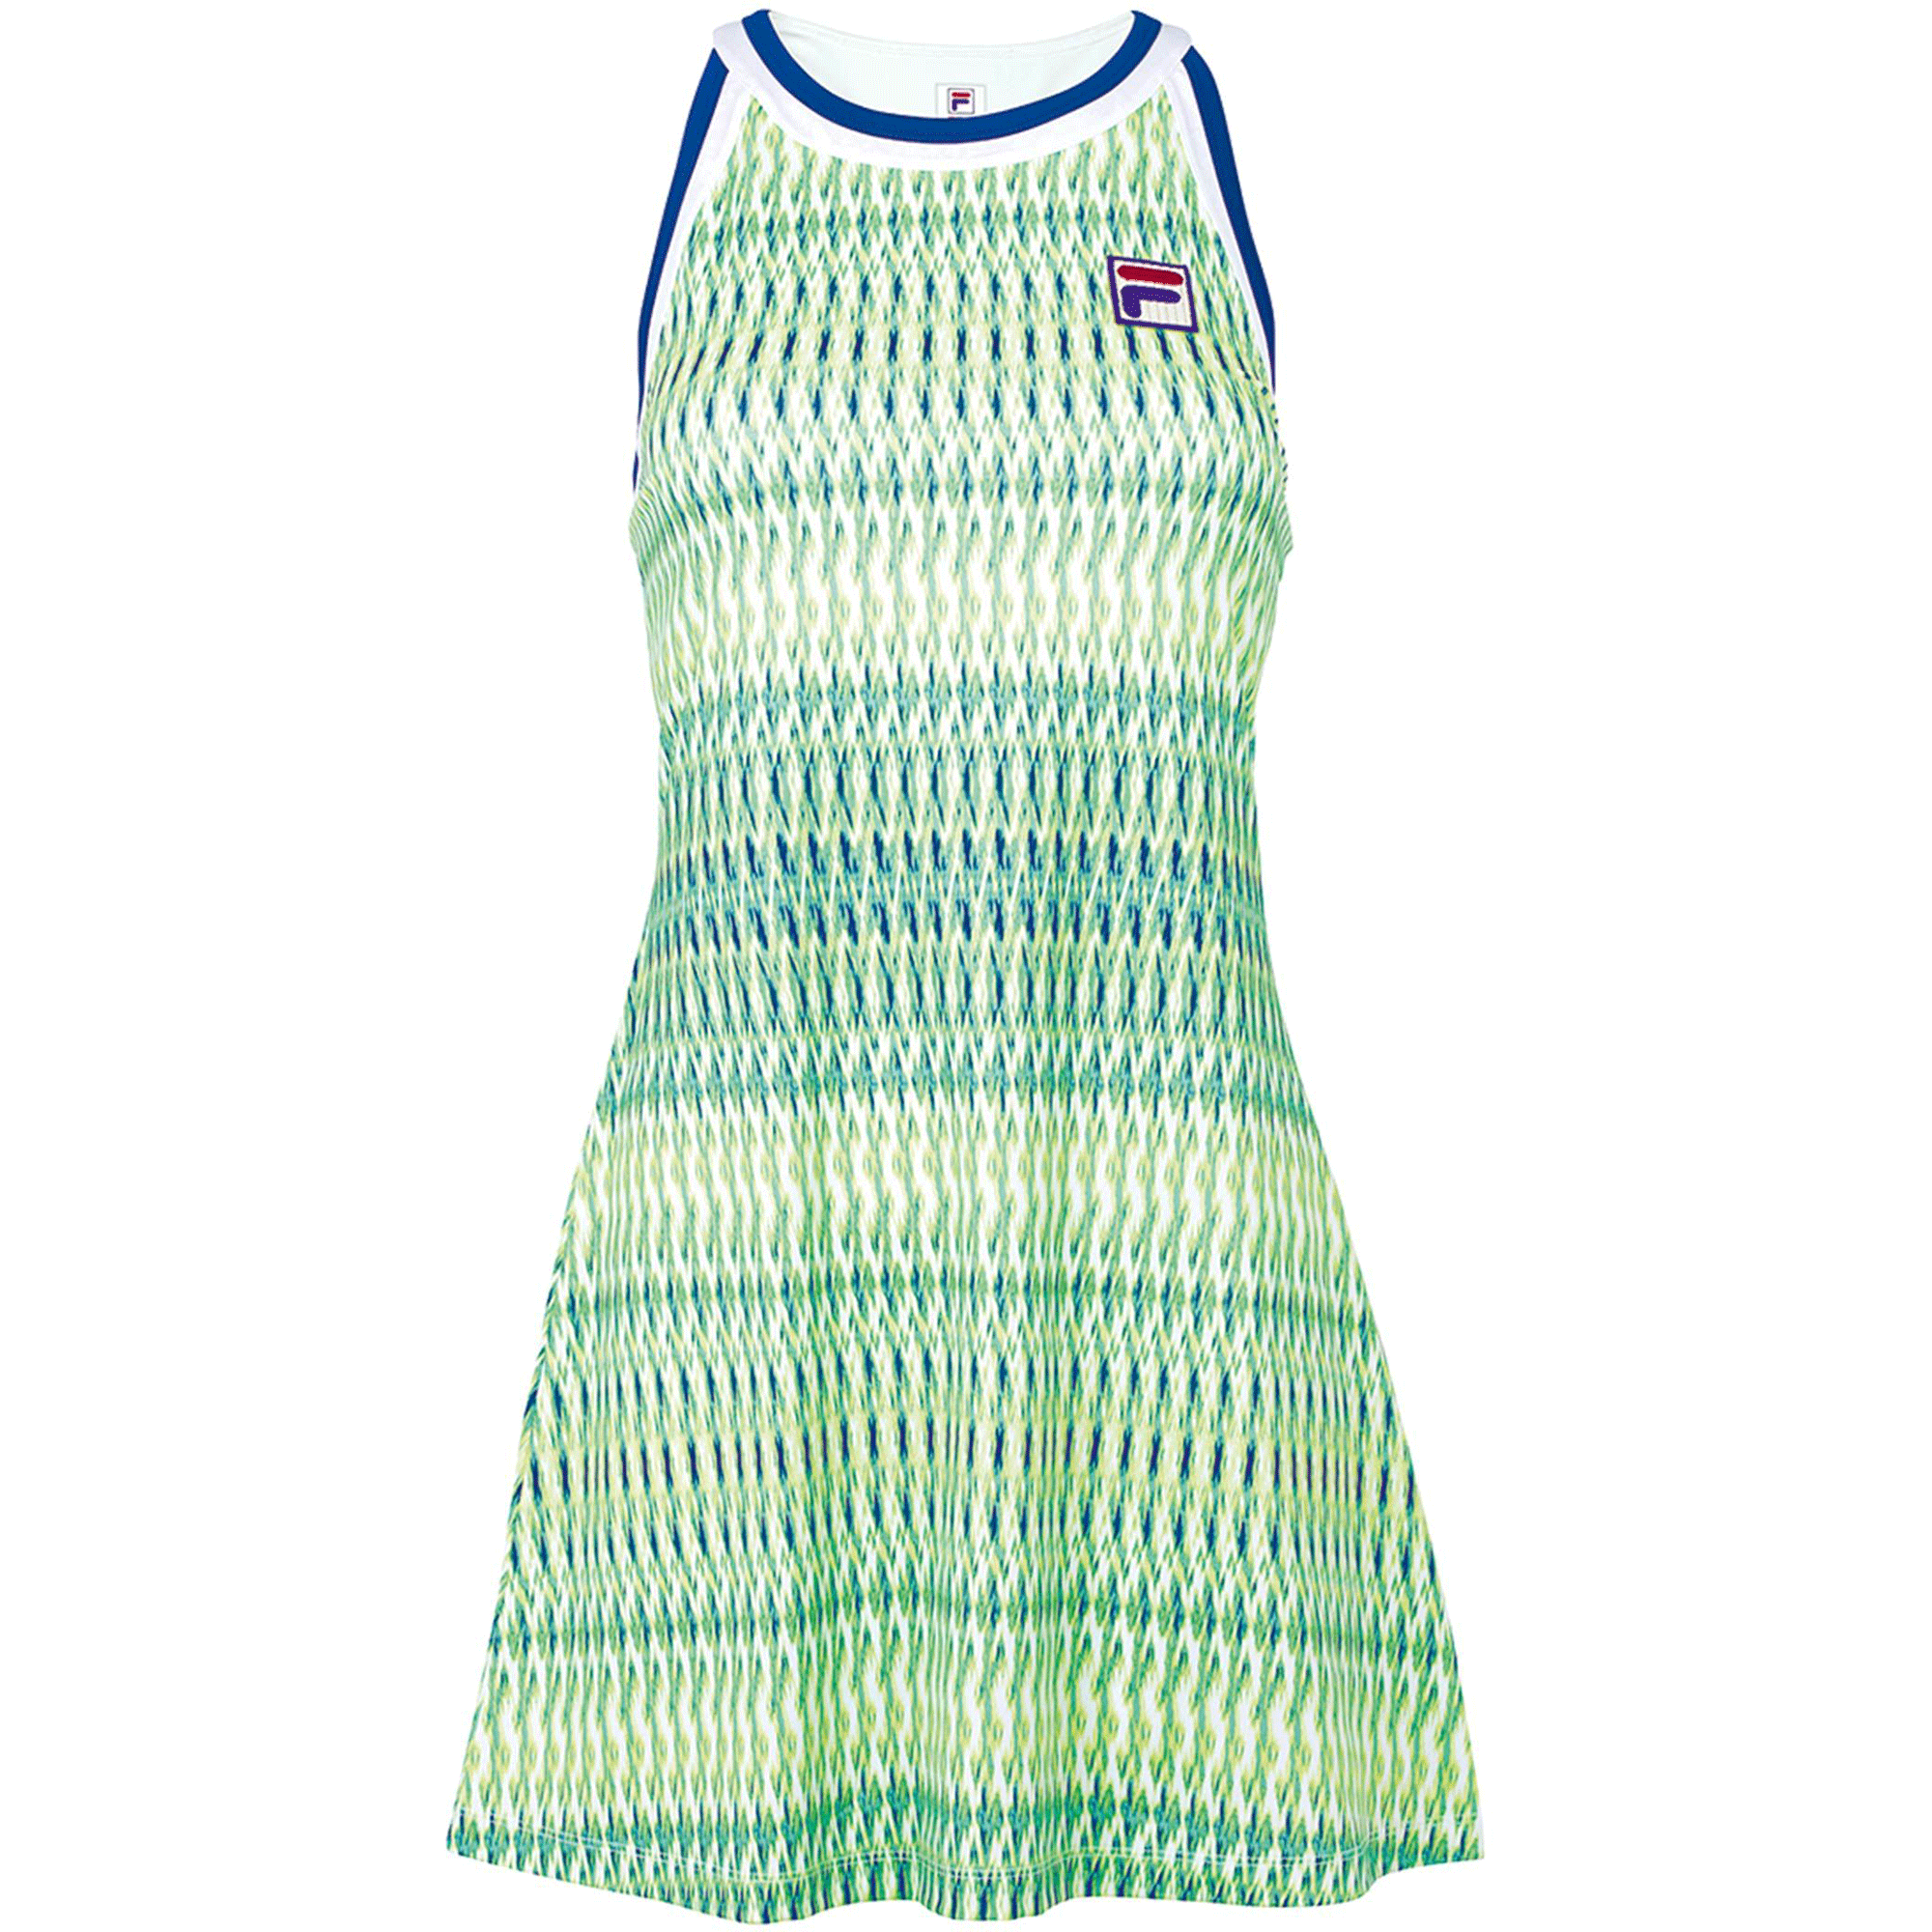 Haiku Romanschrijver Verwisselbaar Fila Womens Acqua Sole Tennis Halter Dress - Green/Blue - Tennisnuts.com